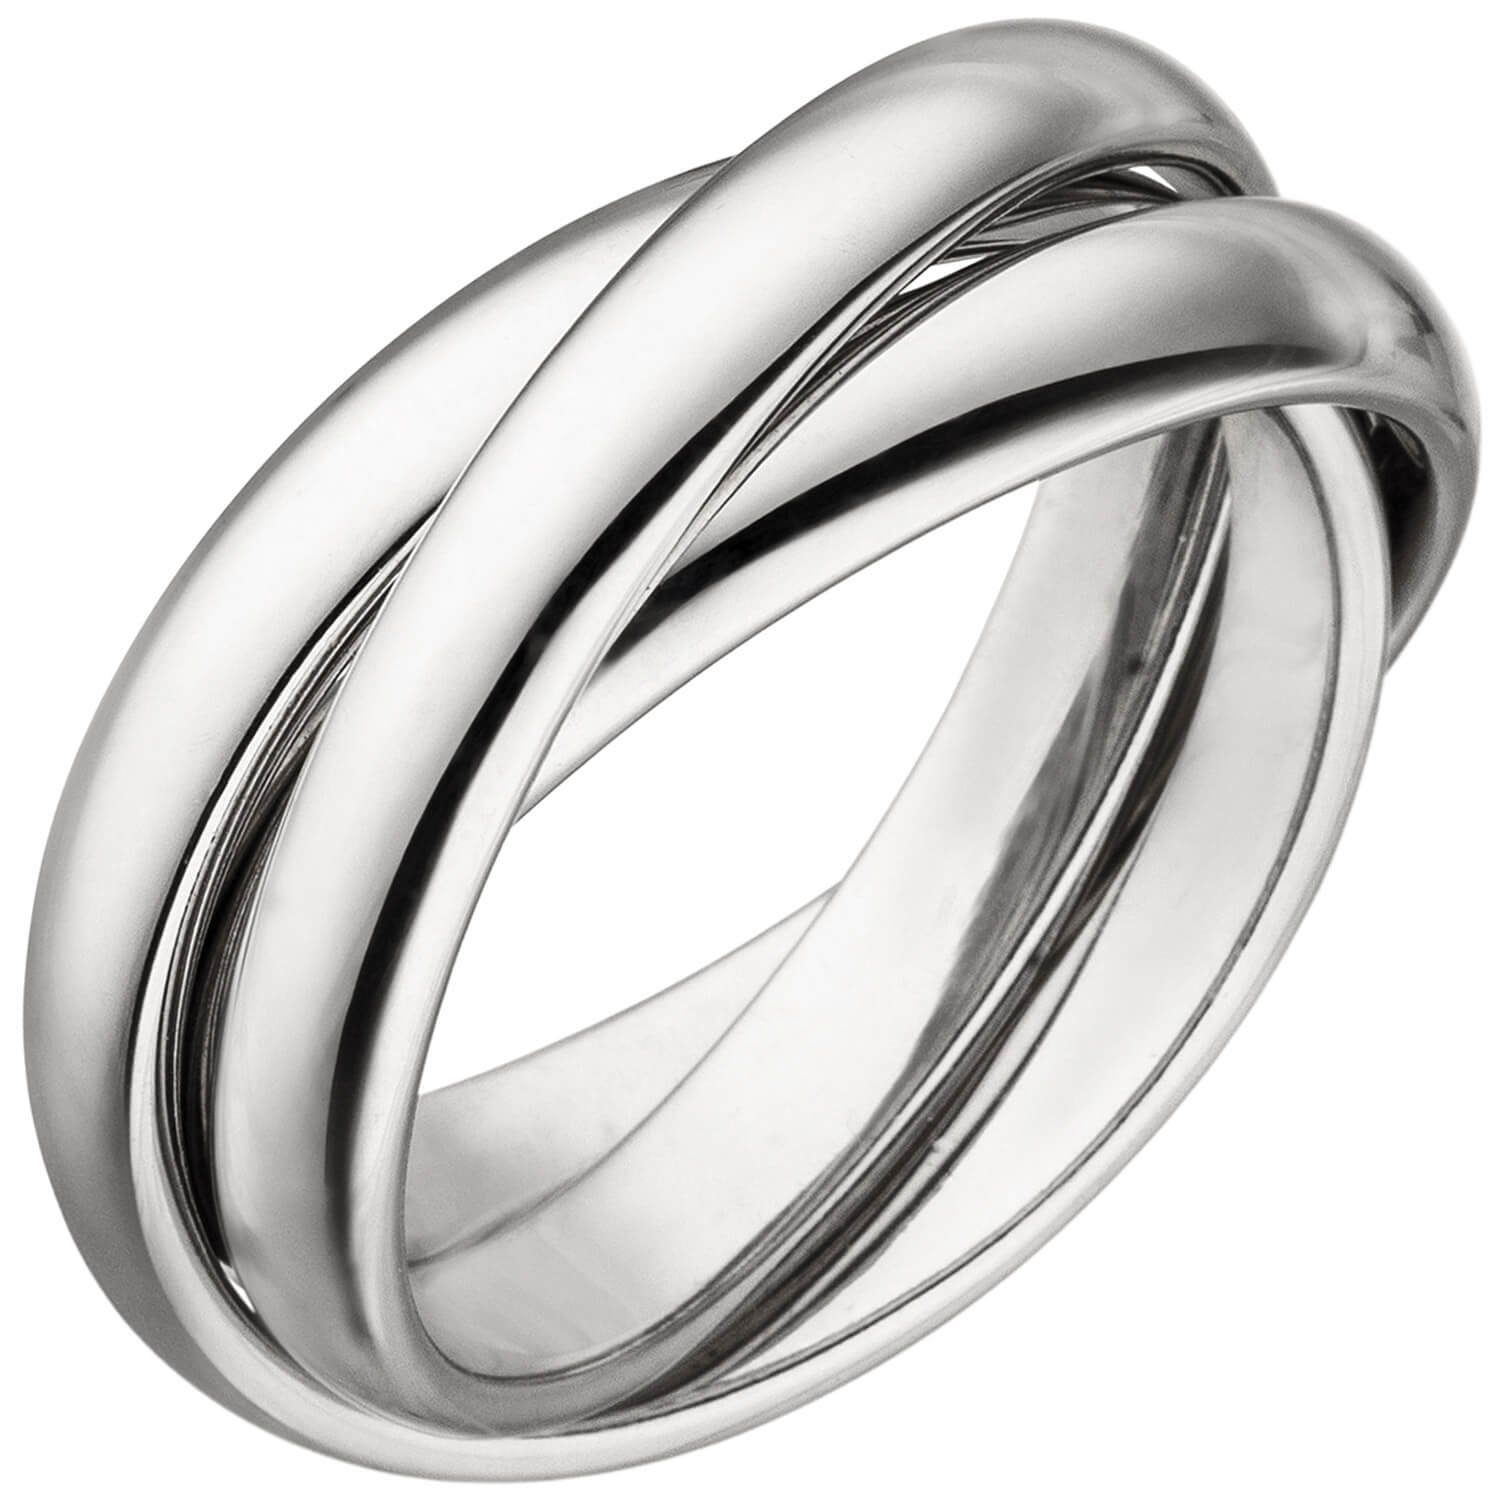 Schmuck Krone Silberring 3-er Ring Damenring aus 925 Silber rhodiniert glänzend 6,5mm breit Fingerring, Silber 925